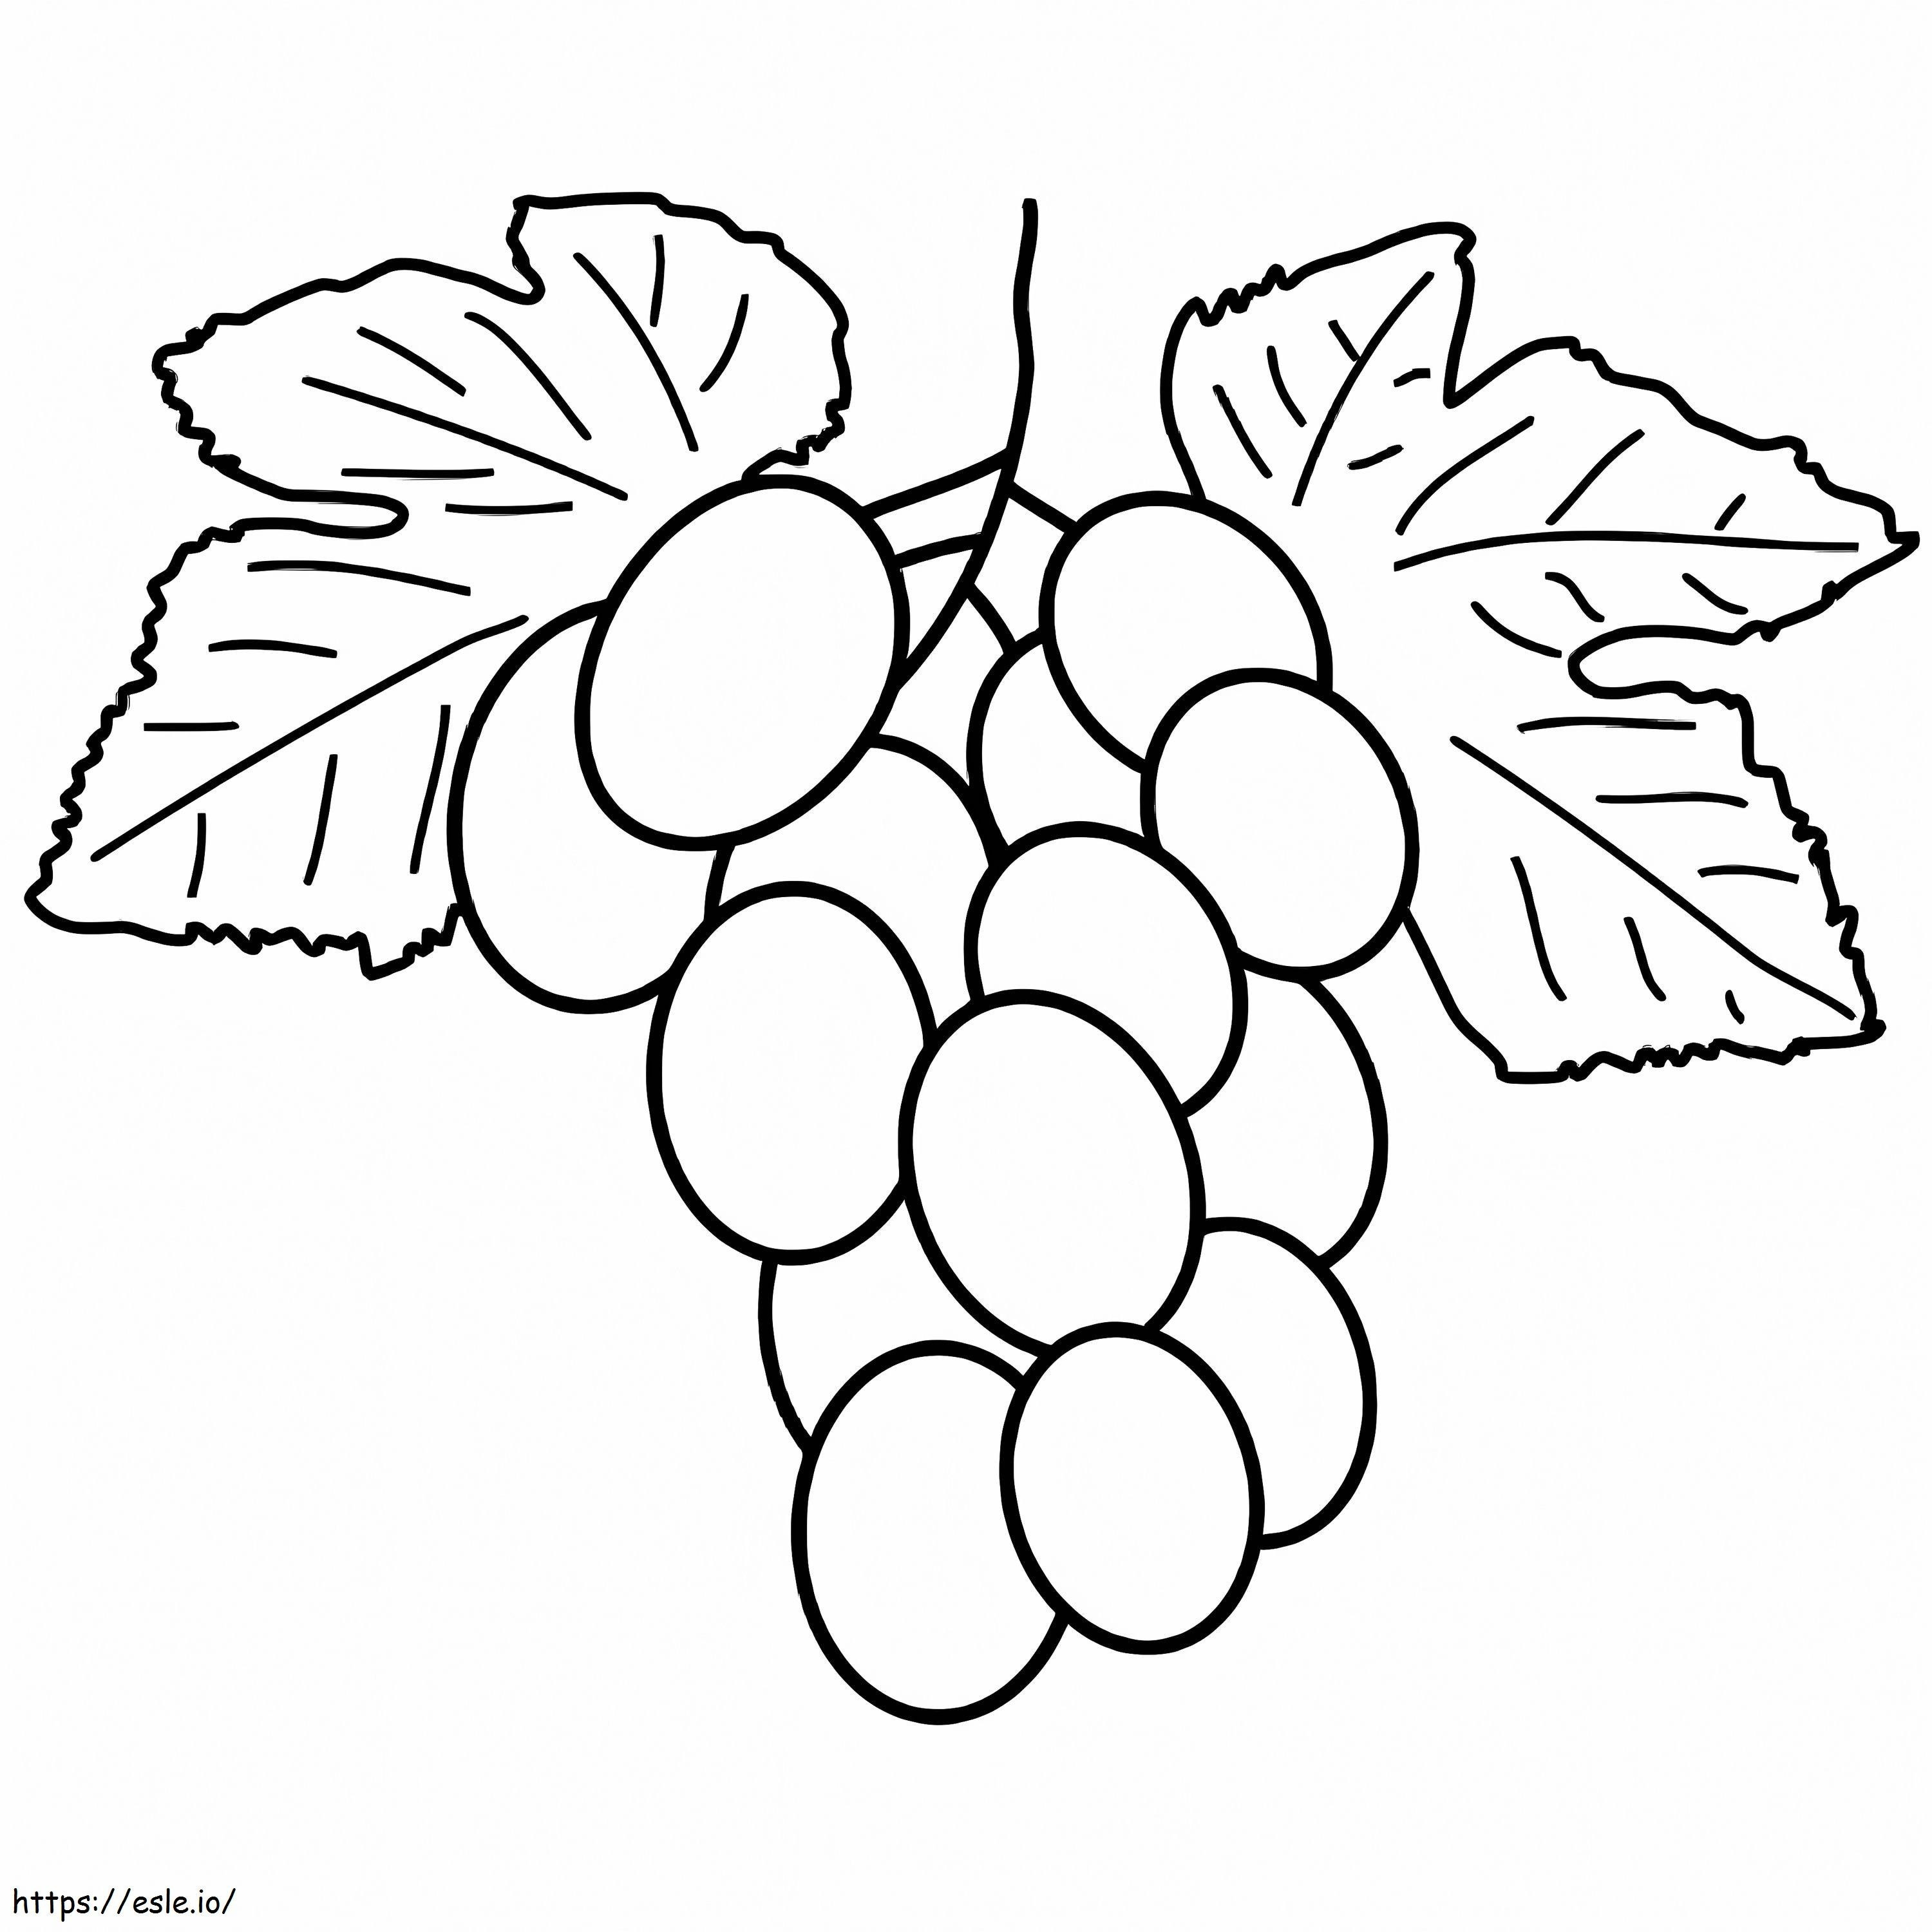 Racimo de uvas para colorear